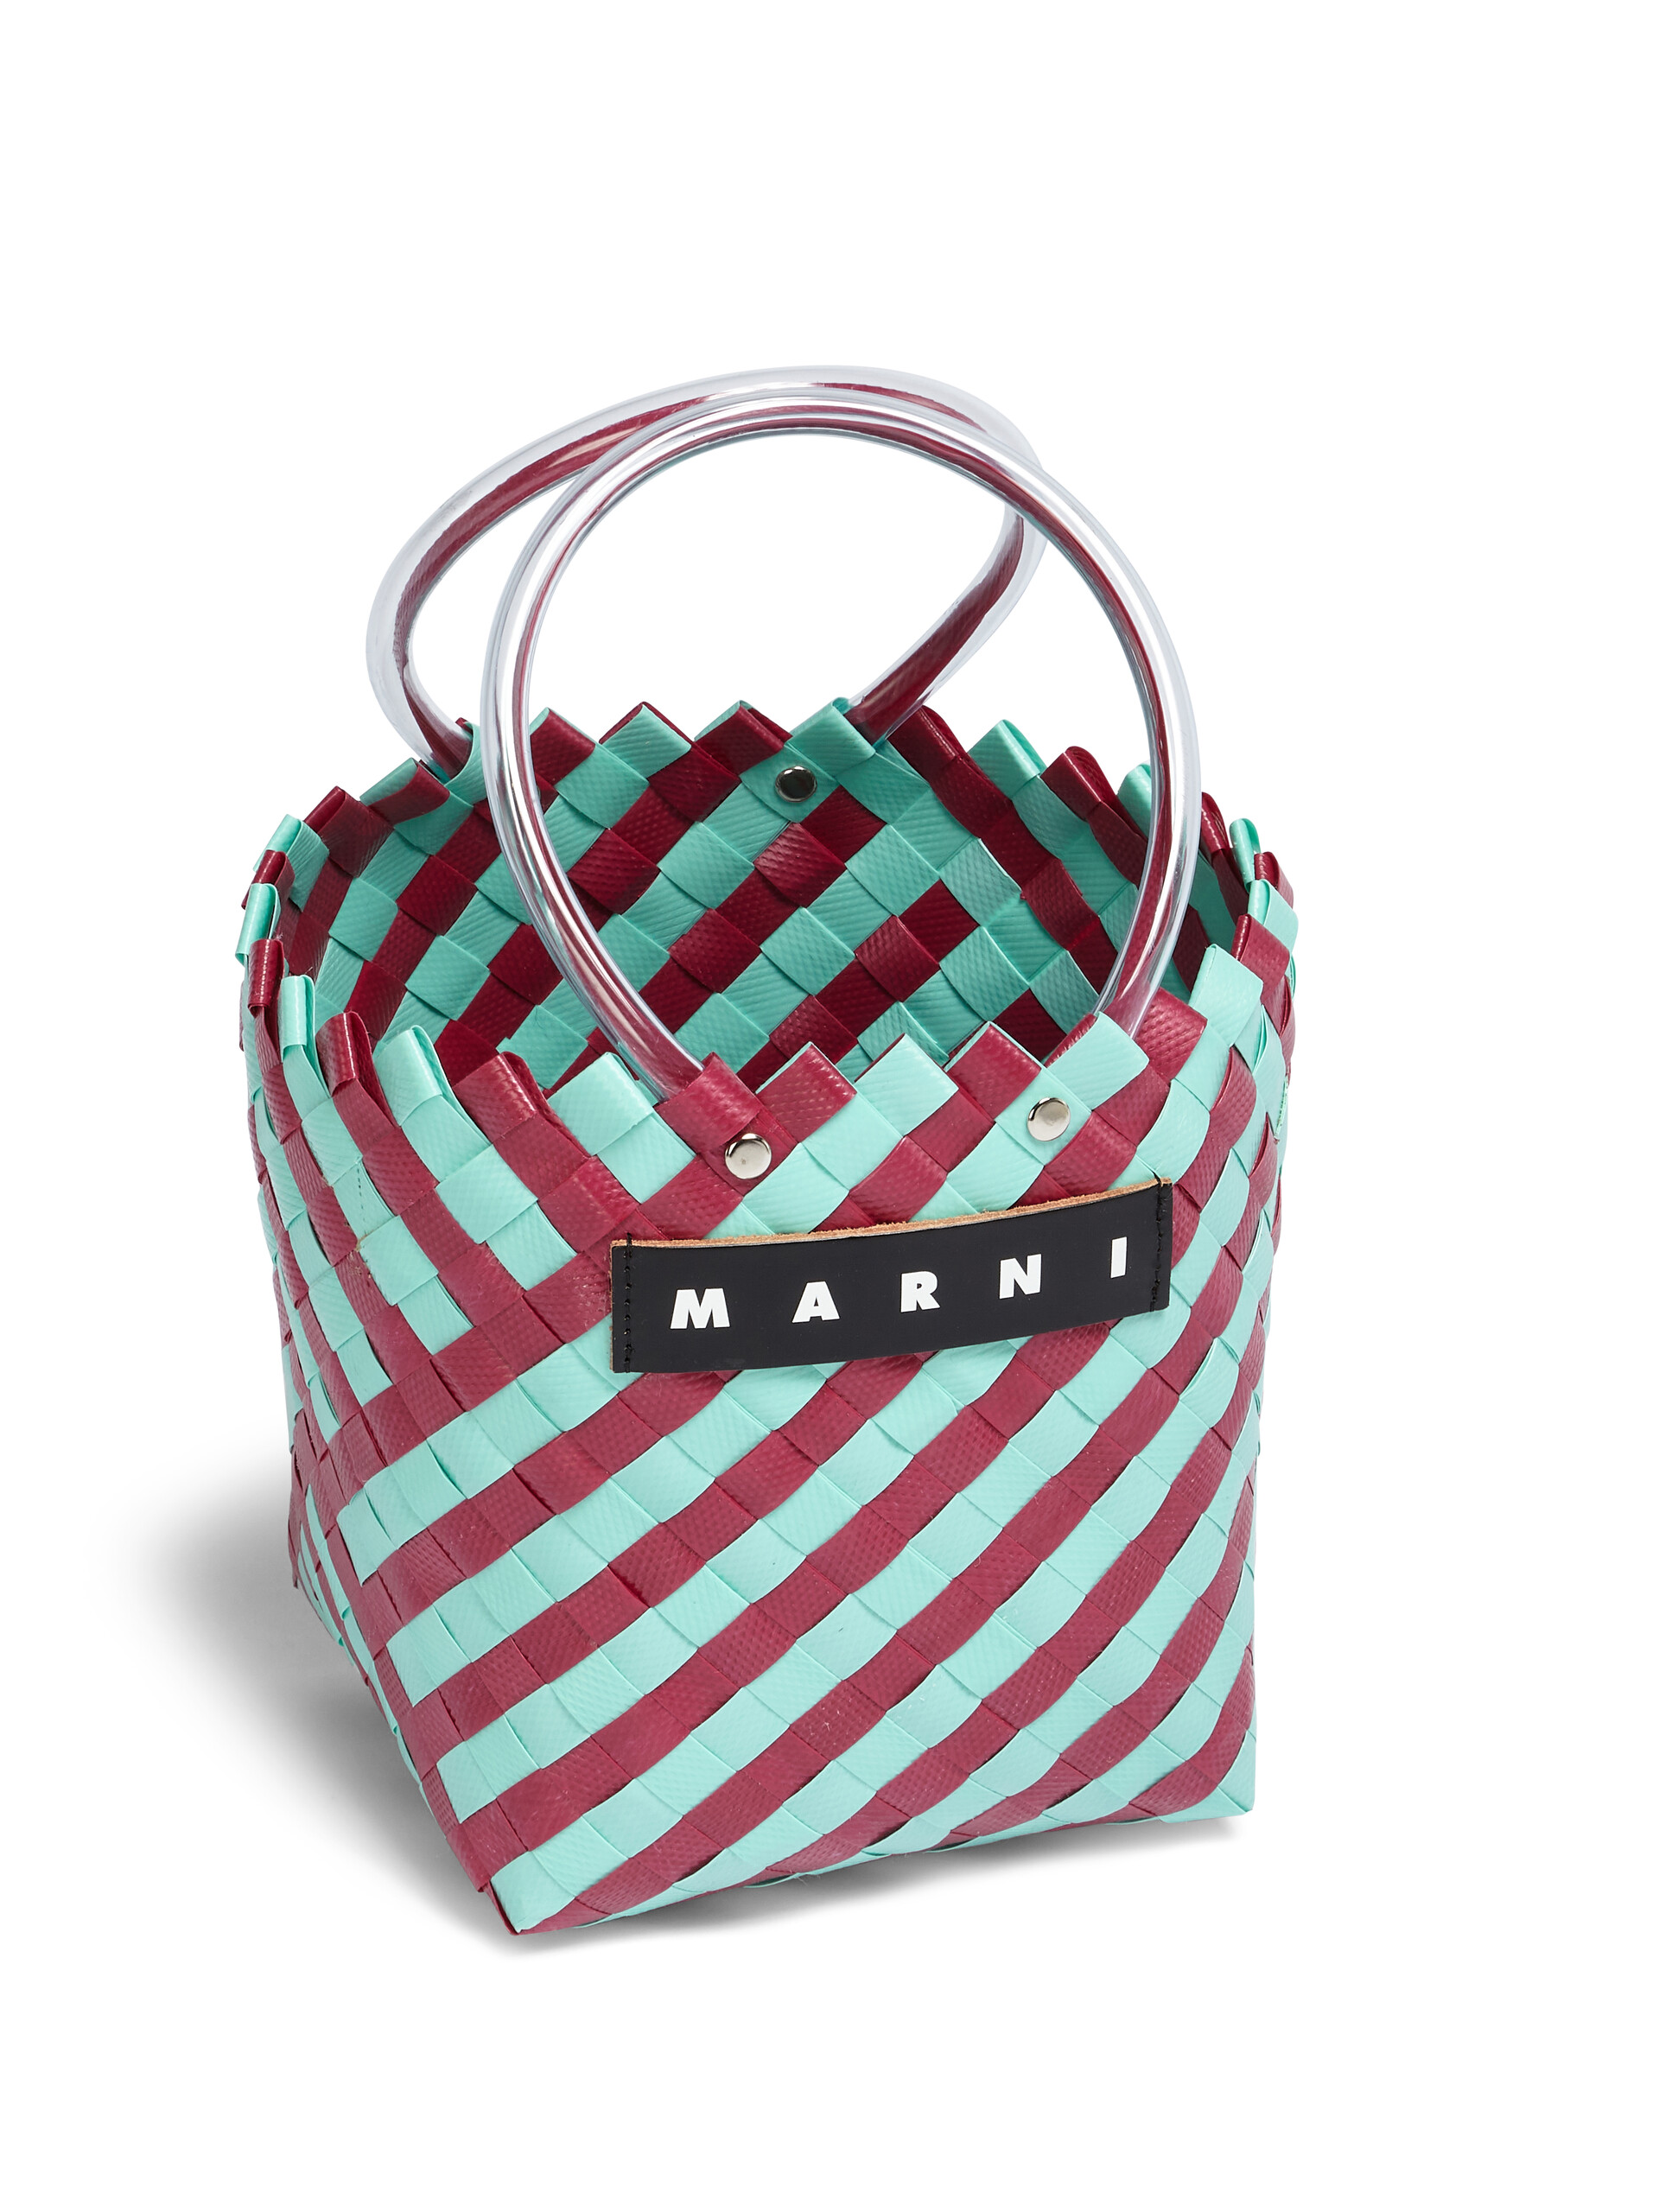 MARNI MARKET TAHA Tasche aus Gewebe in Grün und Burgunderrot - Shopper - Image 4